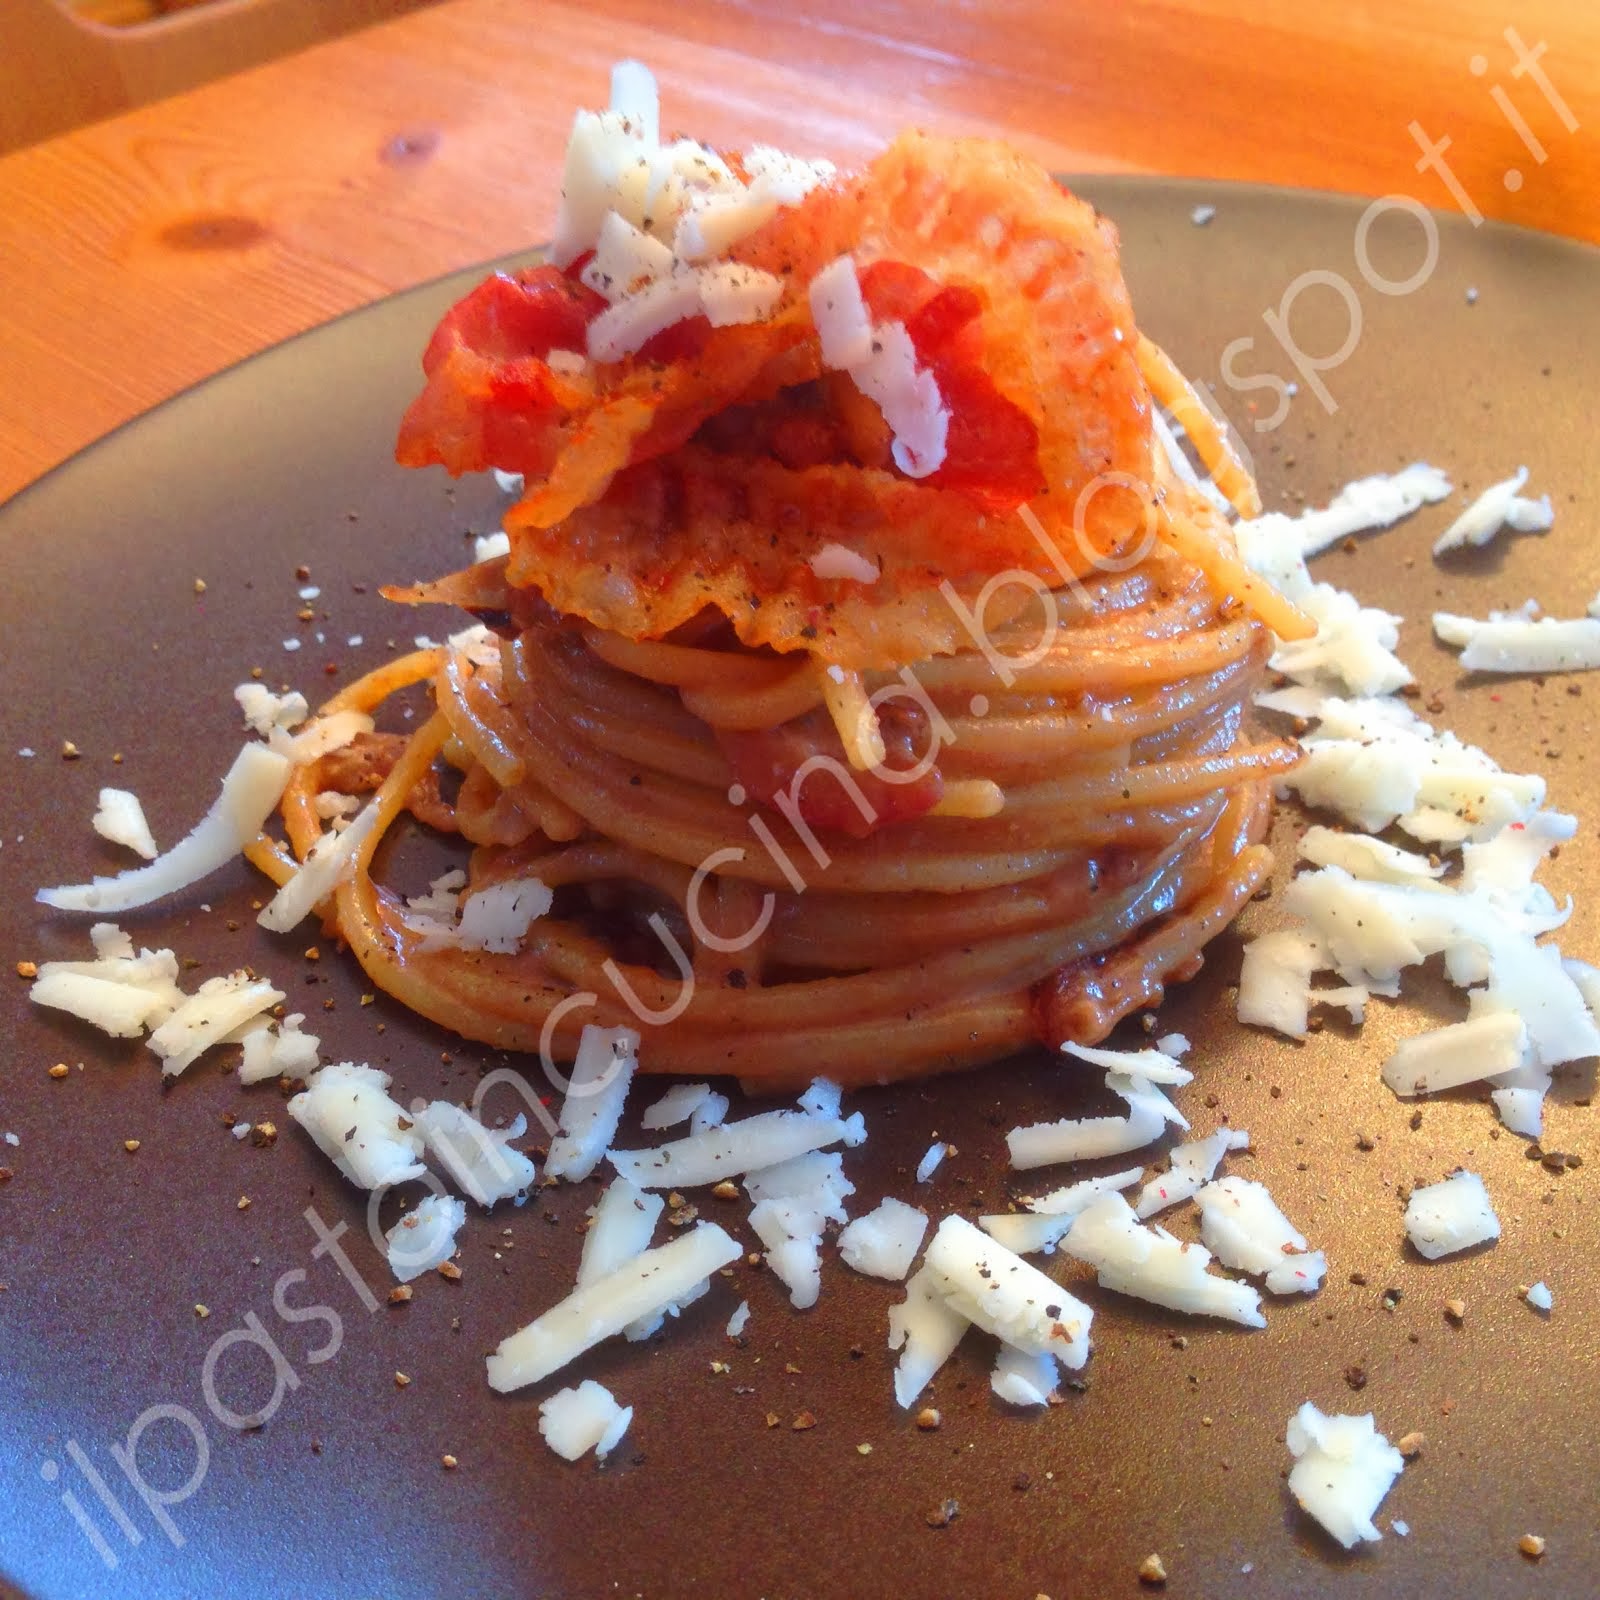 Gli spaghetti alle cipolle, guanciale croccante e pecorino romano